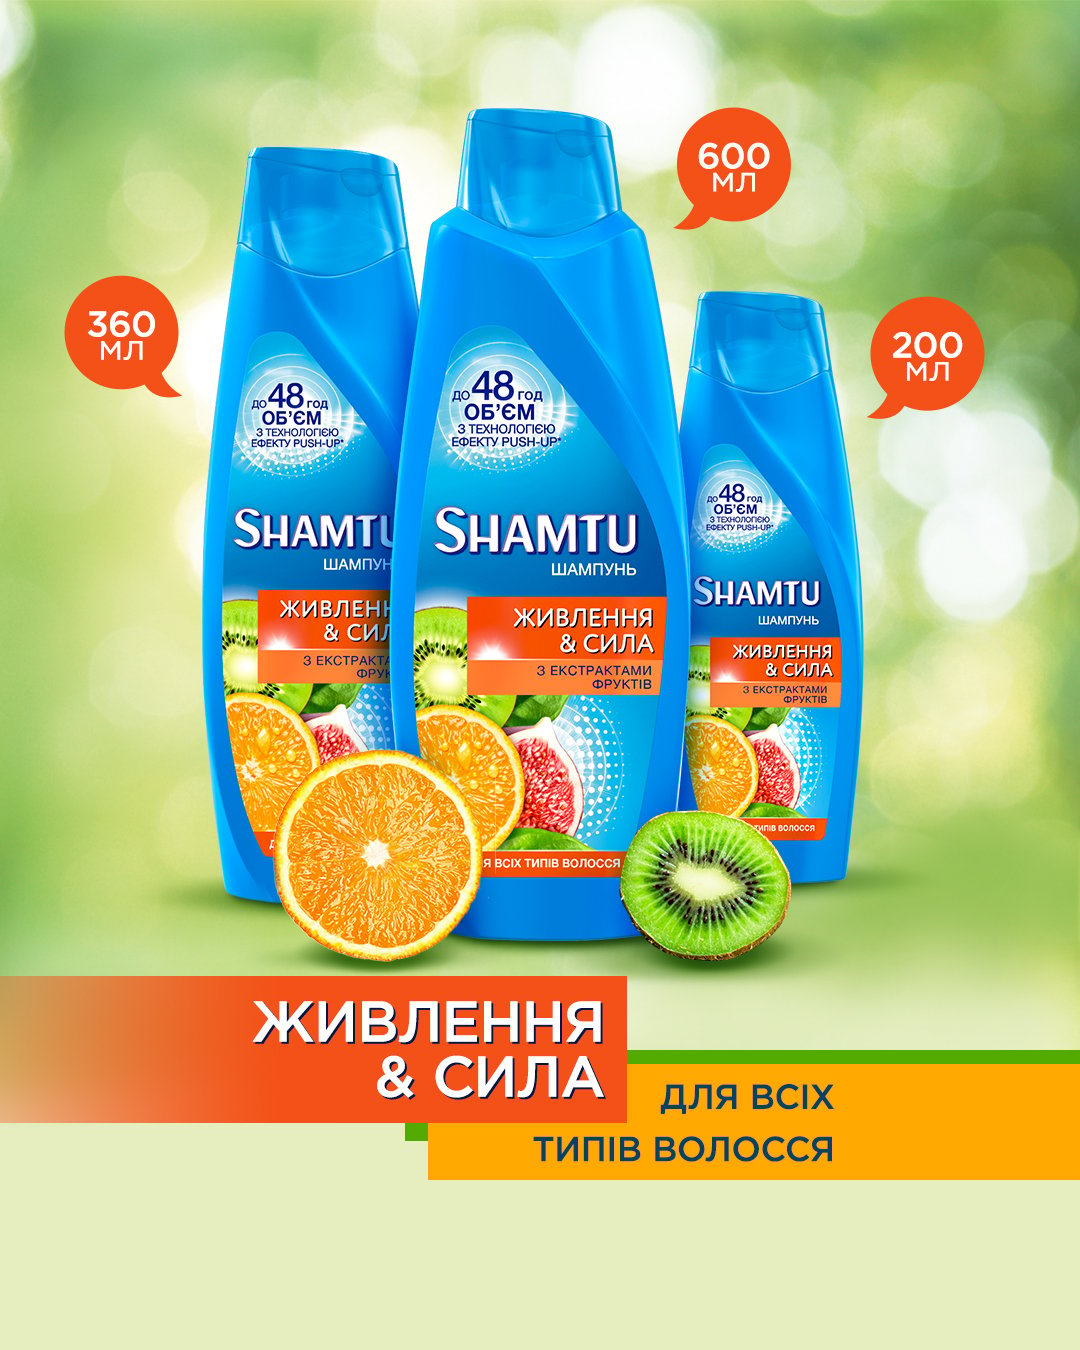 Шампунь Shamtu Питание и Сила, c экстрактами фруктов, для всех типов волос, 360 мл - фото 5